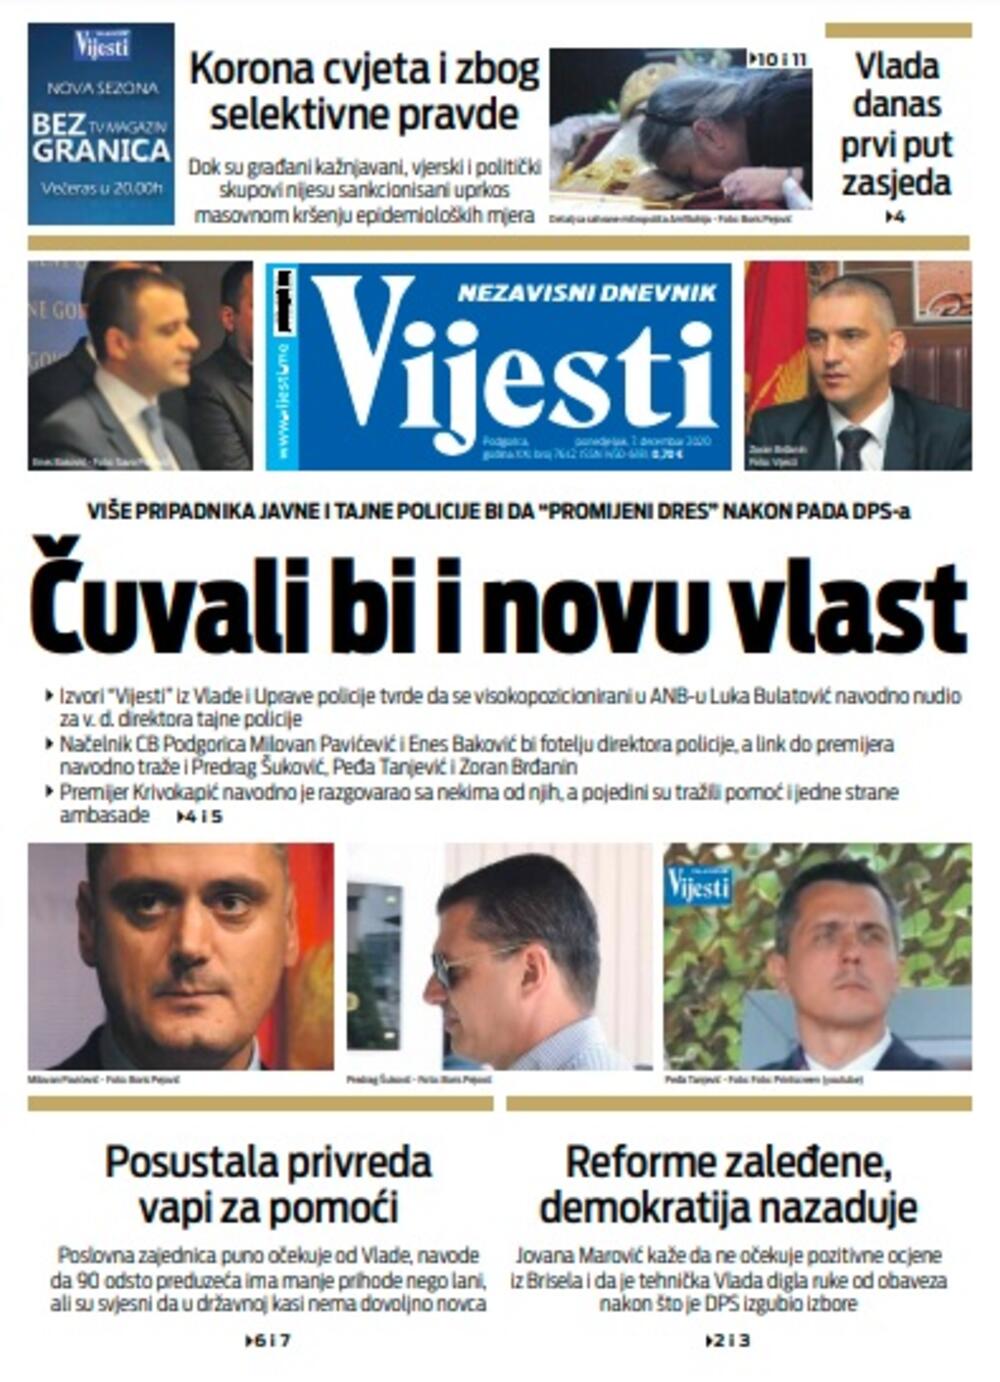 Naslovna strana "Vijesti" za ponedjeljak 7. decembar 2020. godine, Foto: Vijesti